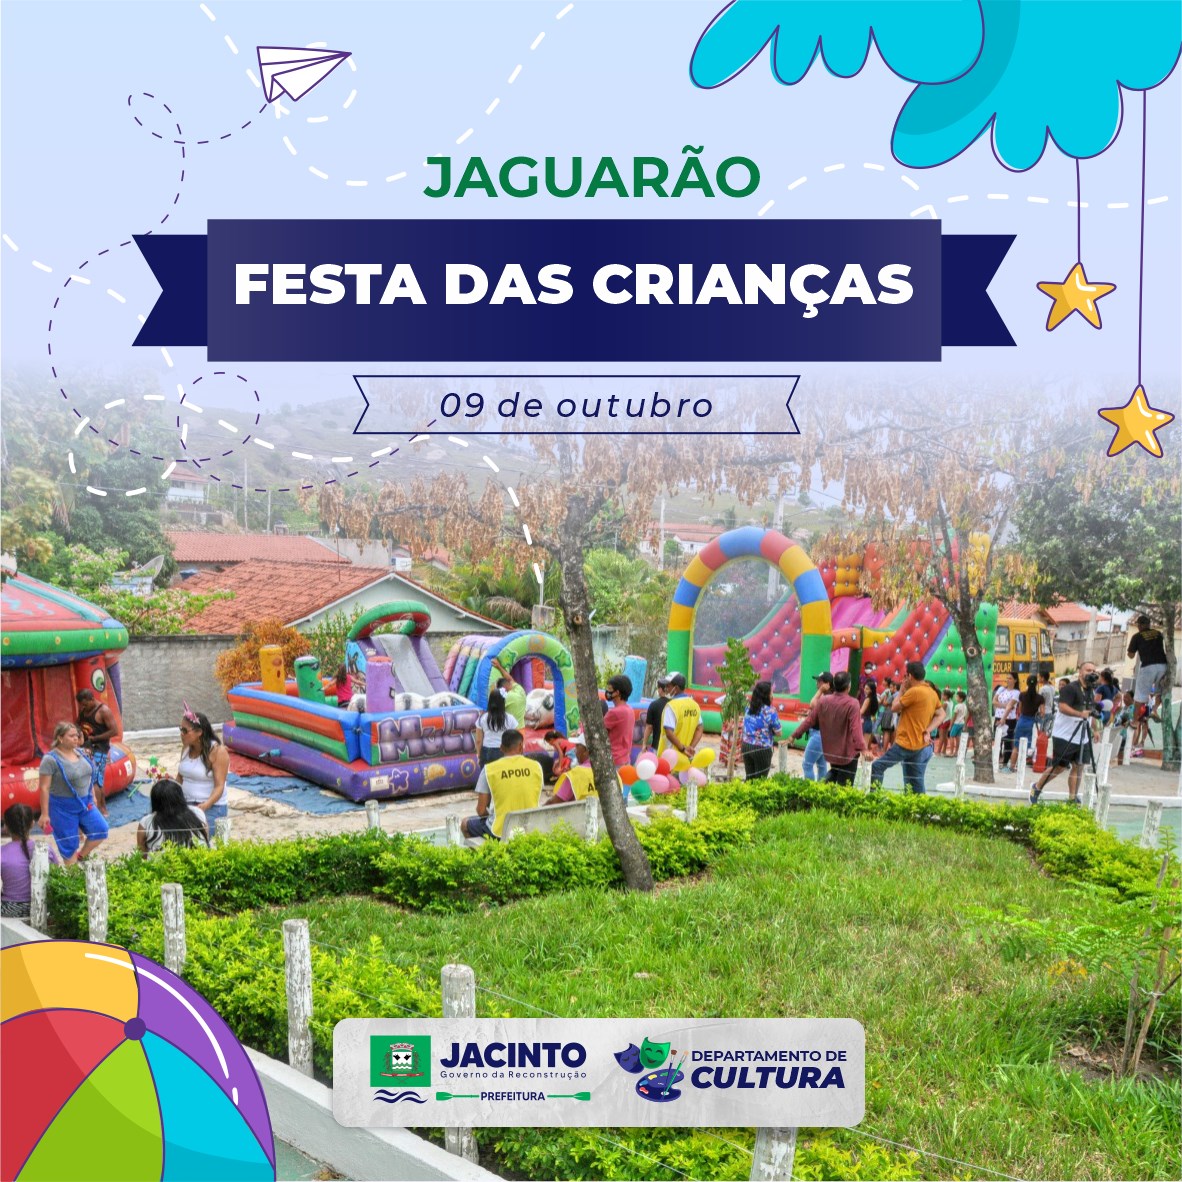 No segundo dia de comemoração, nossa festa das crianças levou muita alegria e descontração ao distrito de Jaguarão